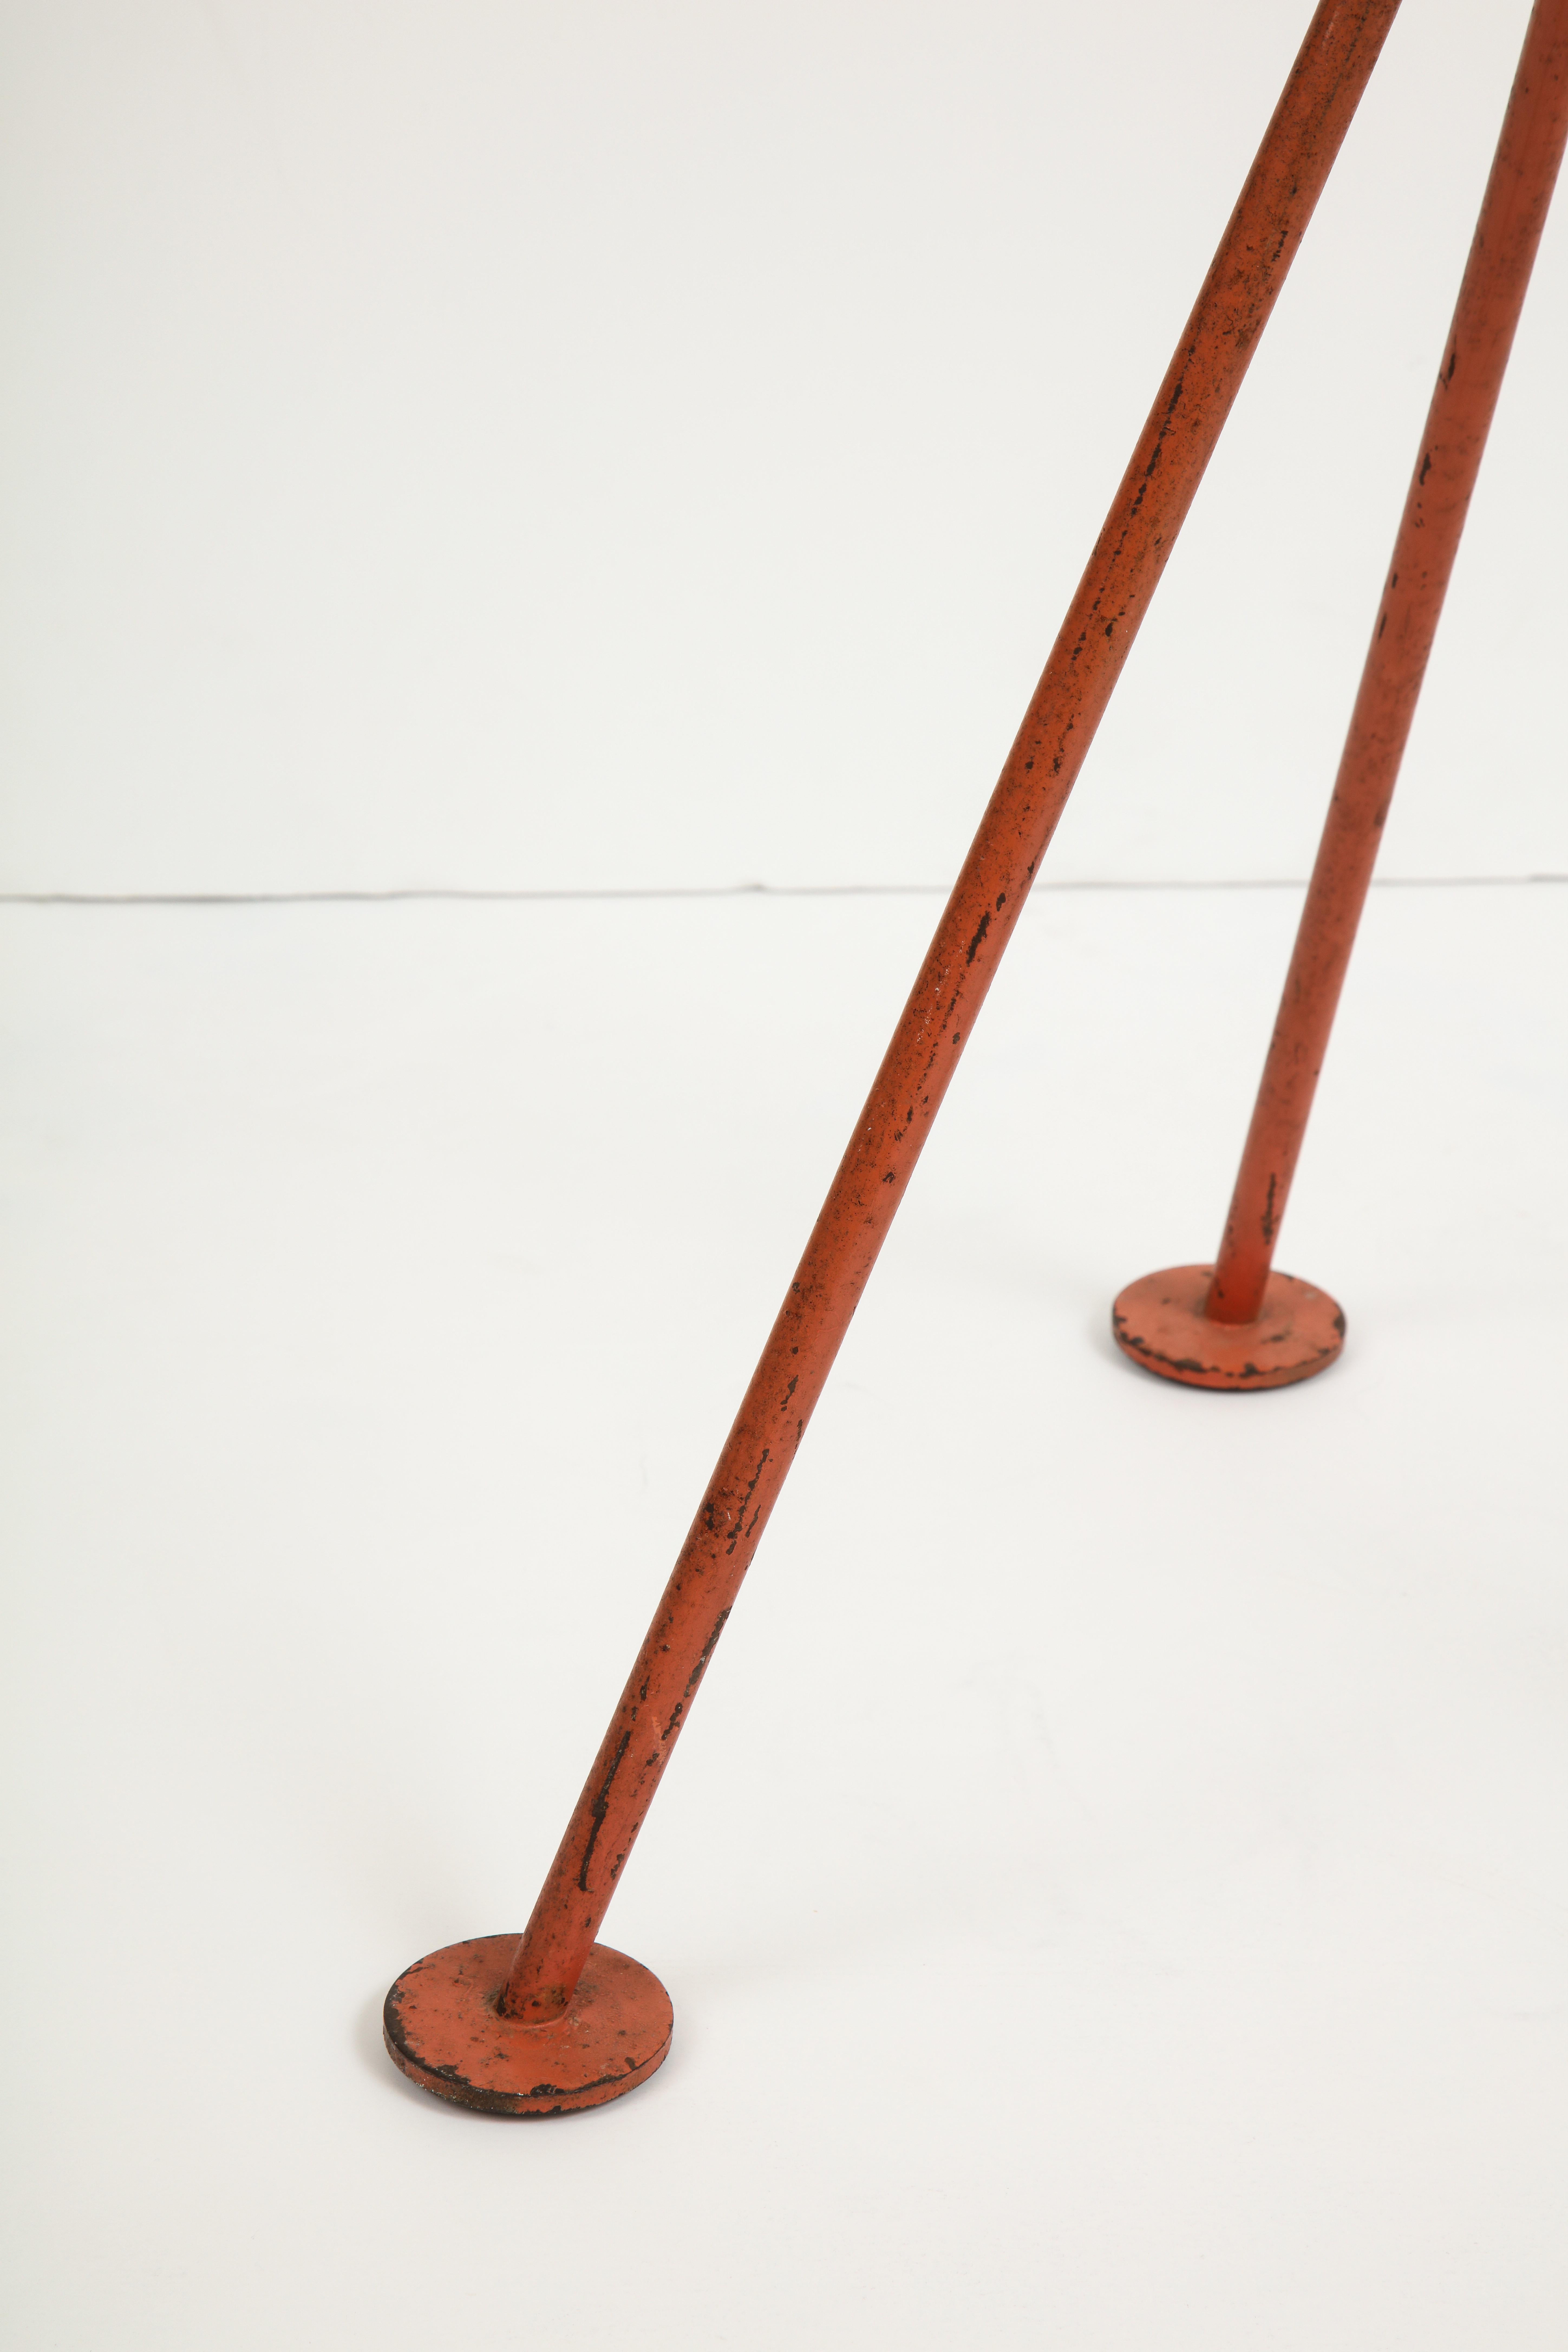 Floor Lamp, Model Grasshopper, Designed by Greta Magnusson Grossman 2